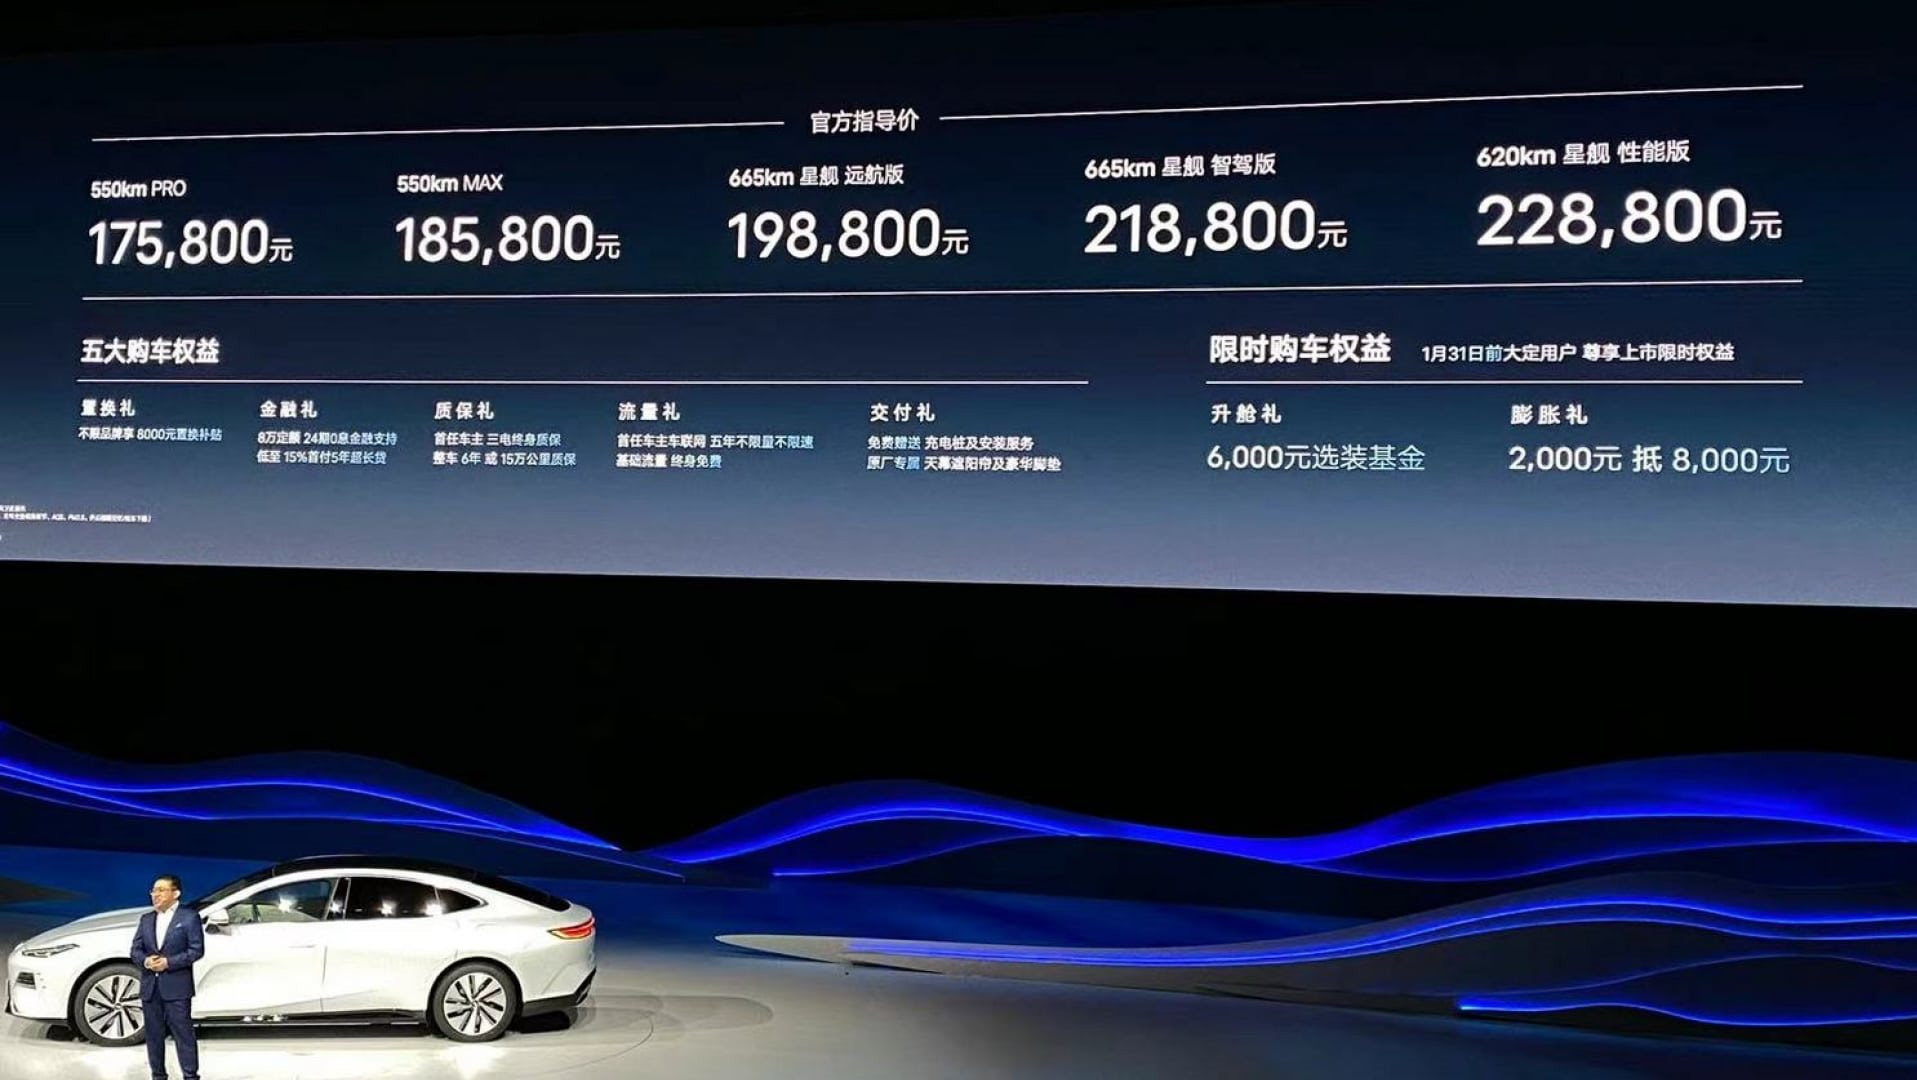 Thương hiệu vừa vào Việt Nam giới thiệu 'bom tấn' sedan điện nhìn là mê: có thông số vượt trội hơn Mercedes-Benz EQS, giá chỉ từ 600 triệu đồng - Ảnh 5.